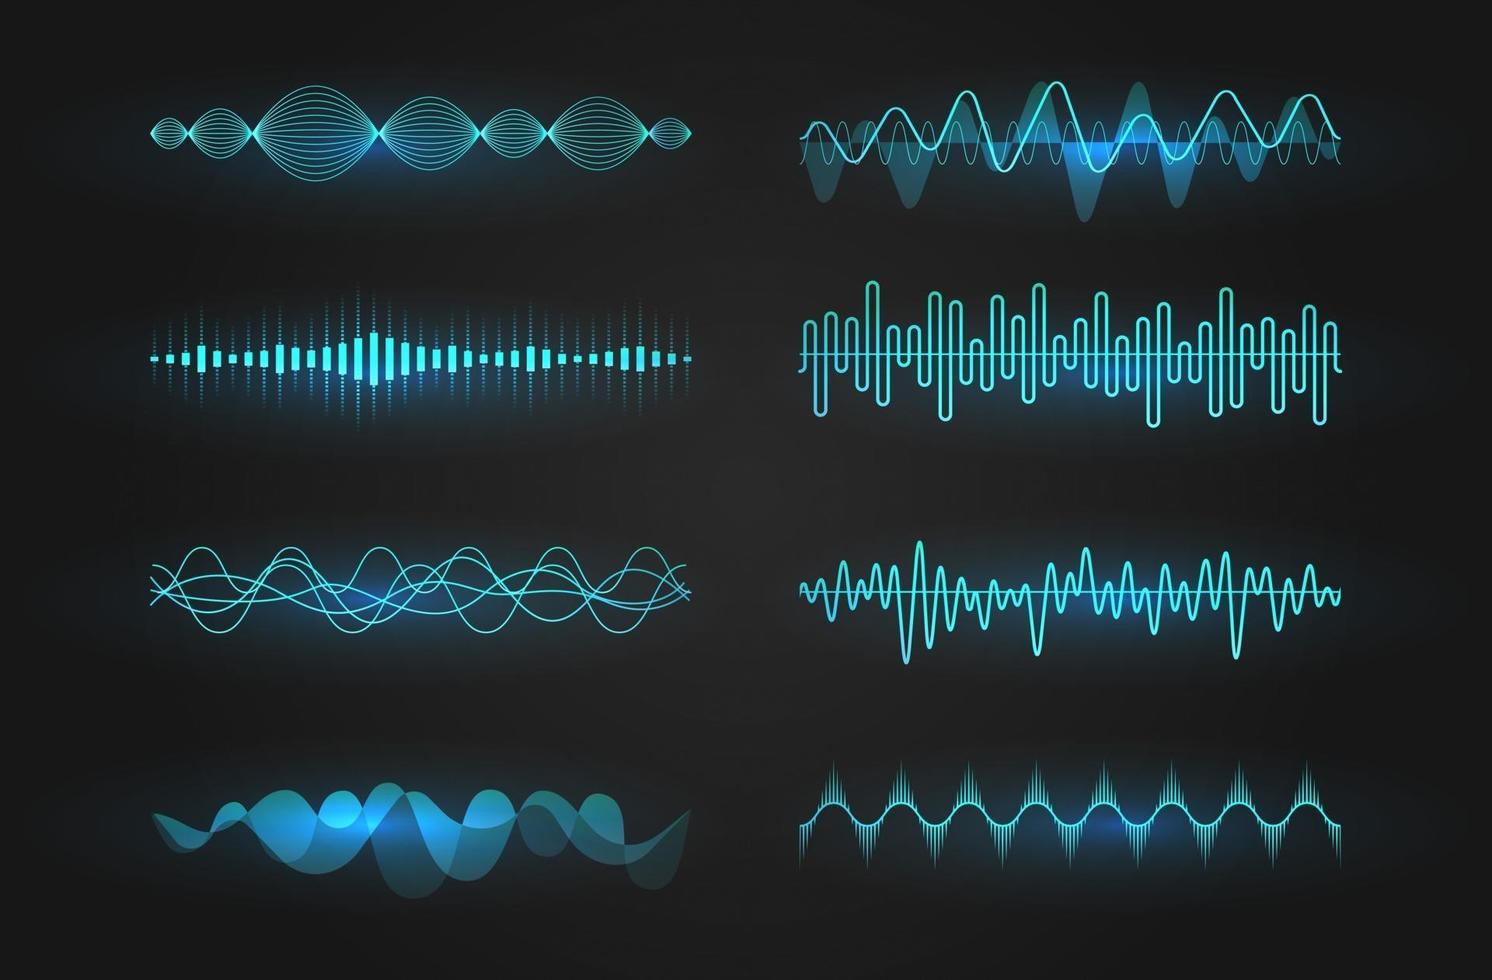 ljudvågor ikonuppsättning. lysande linjer som visar en ljud- eller radiovåg, musikutjämnare eller digitalt kardiogram, gui-designelementmall. isolerad vektorillustration. vektor